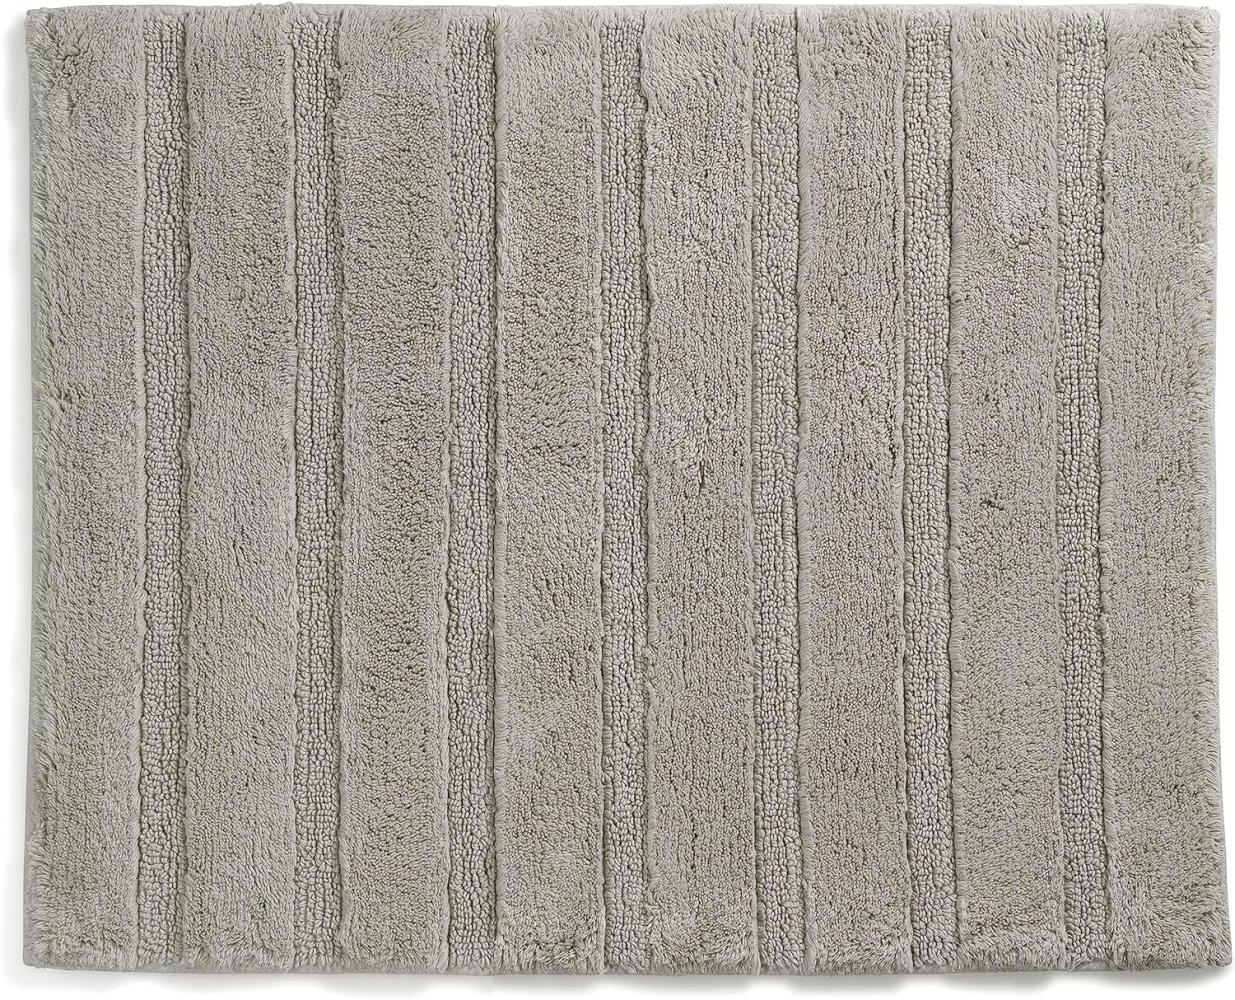 Kela Badematte Megan, 65 cm x 55 cm, 100% Baumwolle, Silbergrau, rutschhemmend, waschbar bis 30° C, geeignet für Fußbodenheizung, 23584 Bild 1